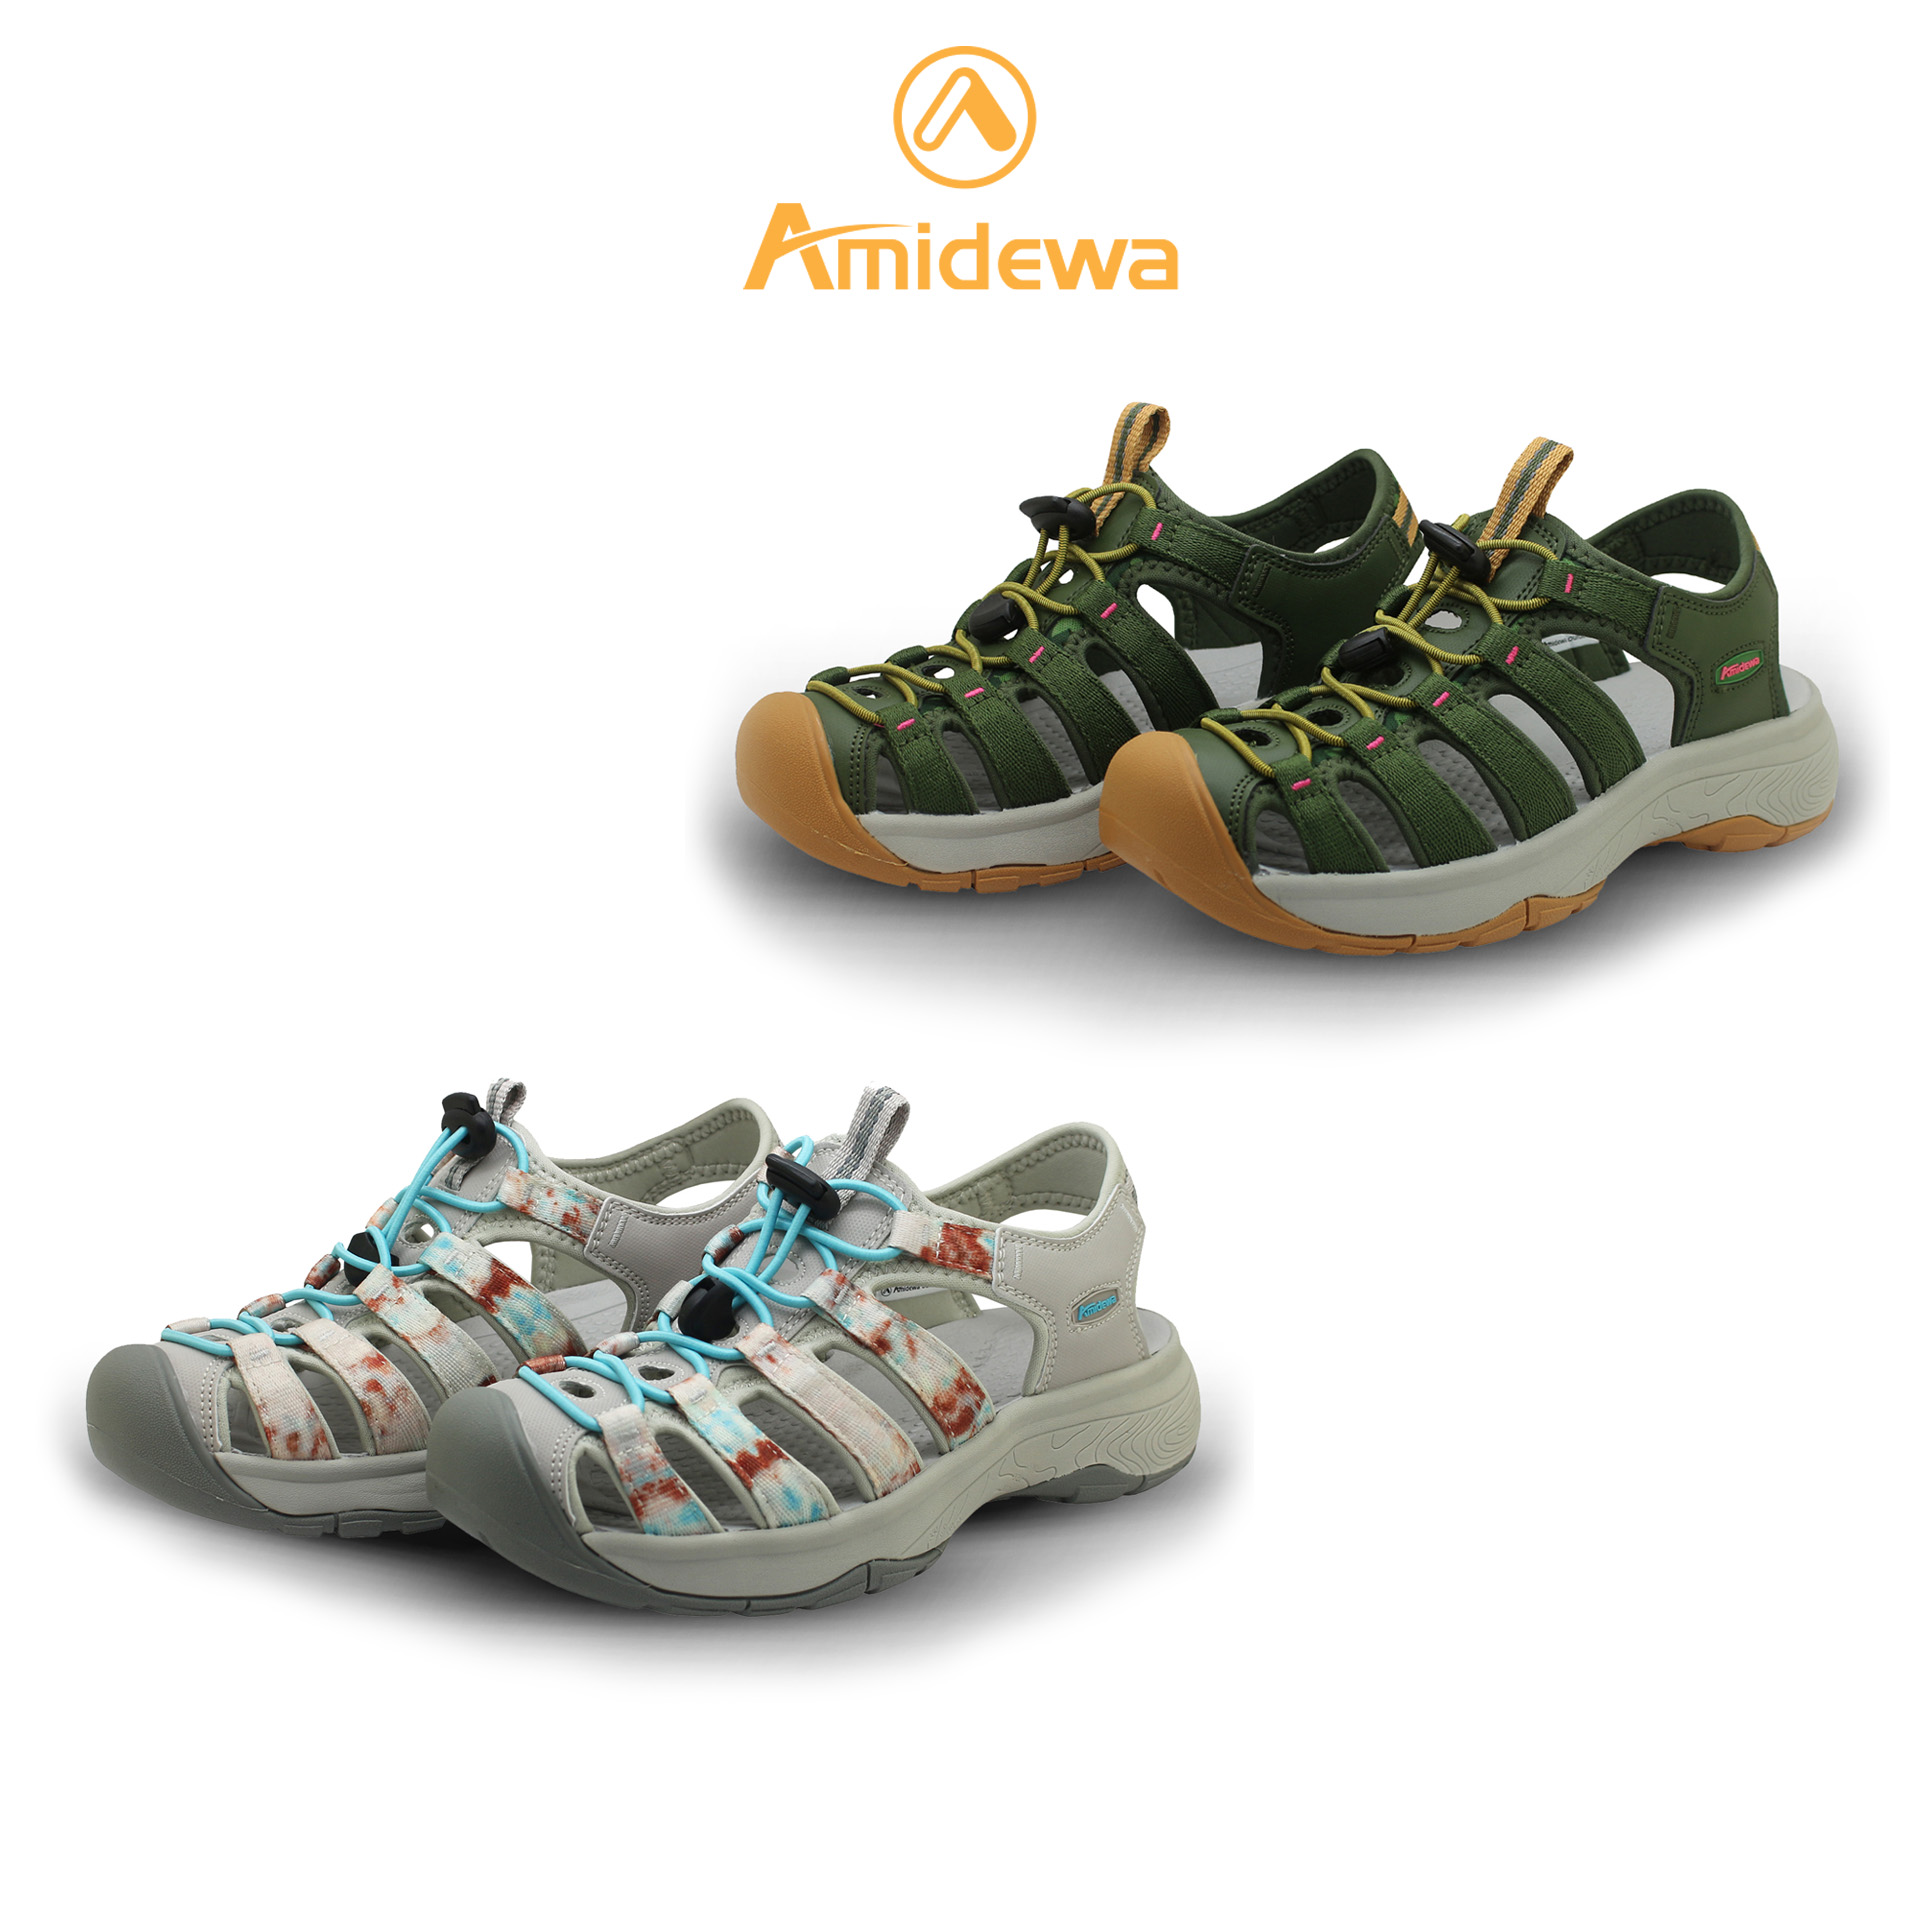 AMIDEWA รองเท้ารัดส้นผู้หญิง สวมใส่สบายเท้า น้ำหนักเบา ไม่อับชื้น ปกป้องปลายเท้า3ชั้น รหัส PS34836